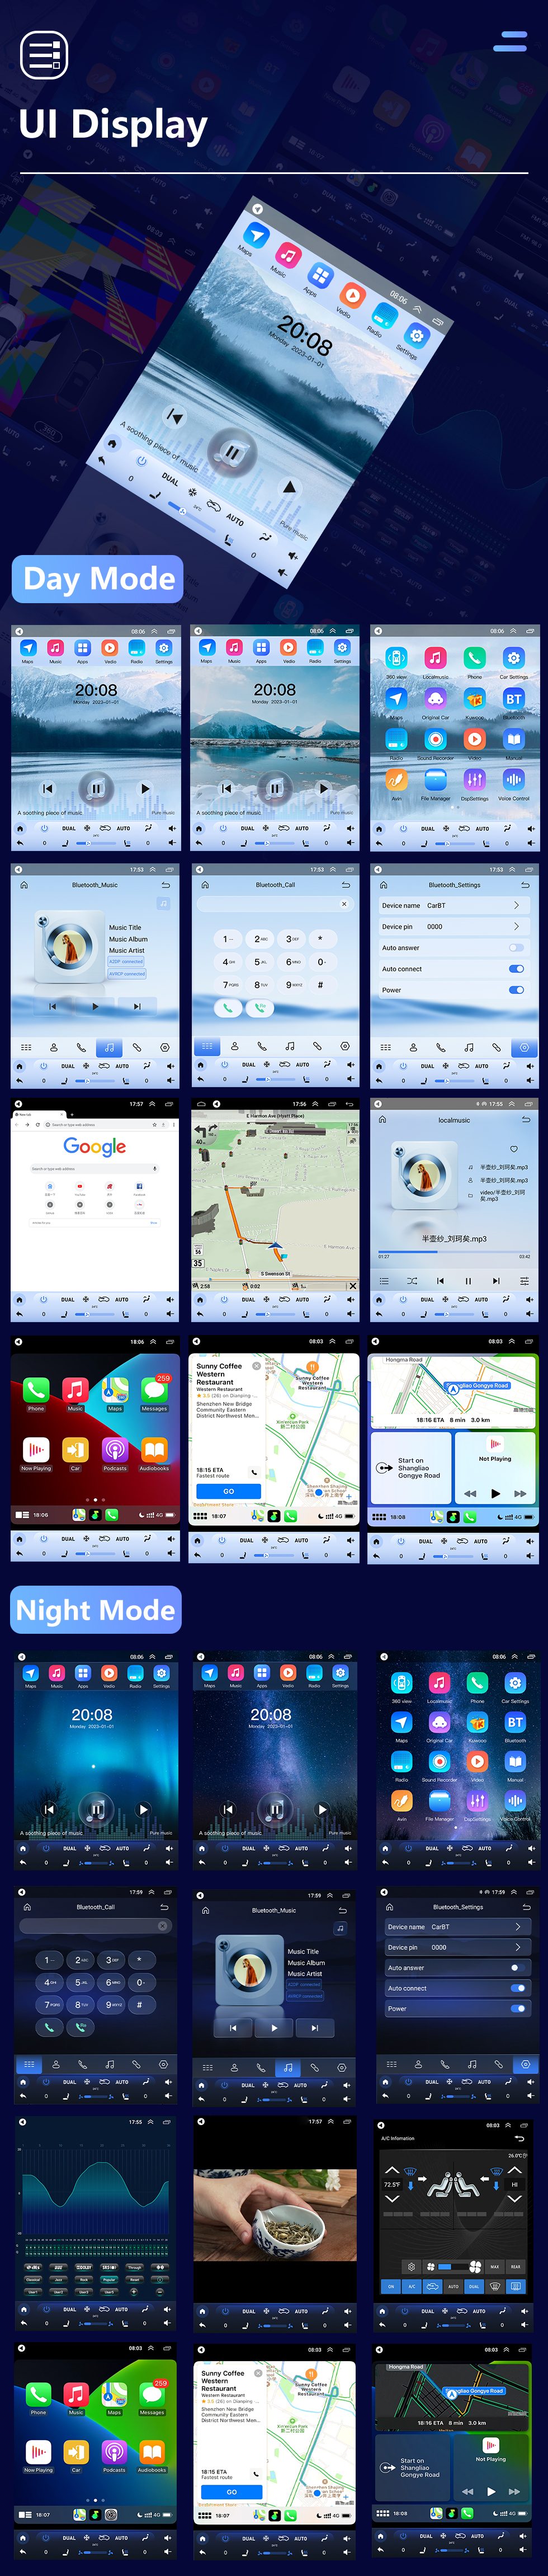 Seicane Para 2012-2016 Citroen Quatre （High) Rádio Android 10.0 9,7 polegadas HD Touchscreen Bluetooth com sistema de navegação GPS Suporte para Carplay 1080P AHD Câmera DVR OBD2